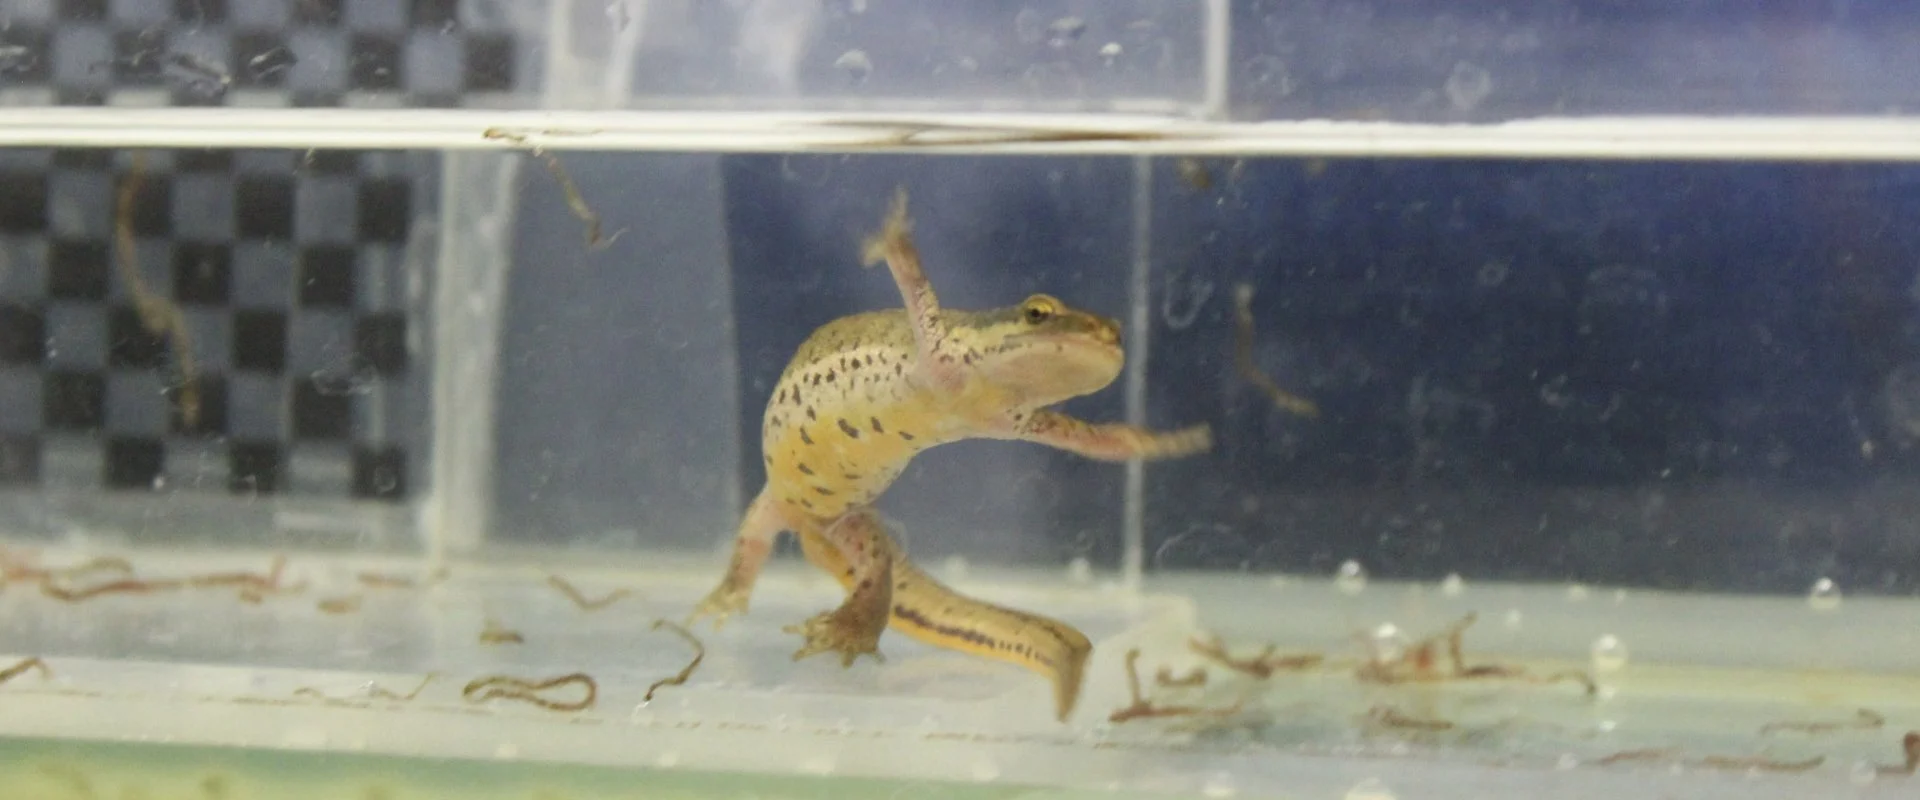 Salamandre nageant dans un réservoir d'eau claire avec un motif en damier partiellement obscurci à l'arrière-plan.